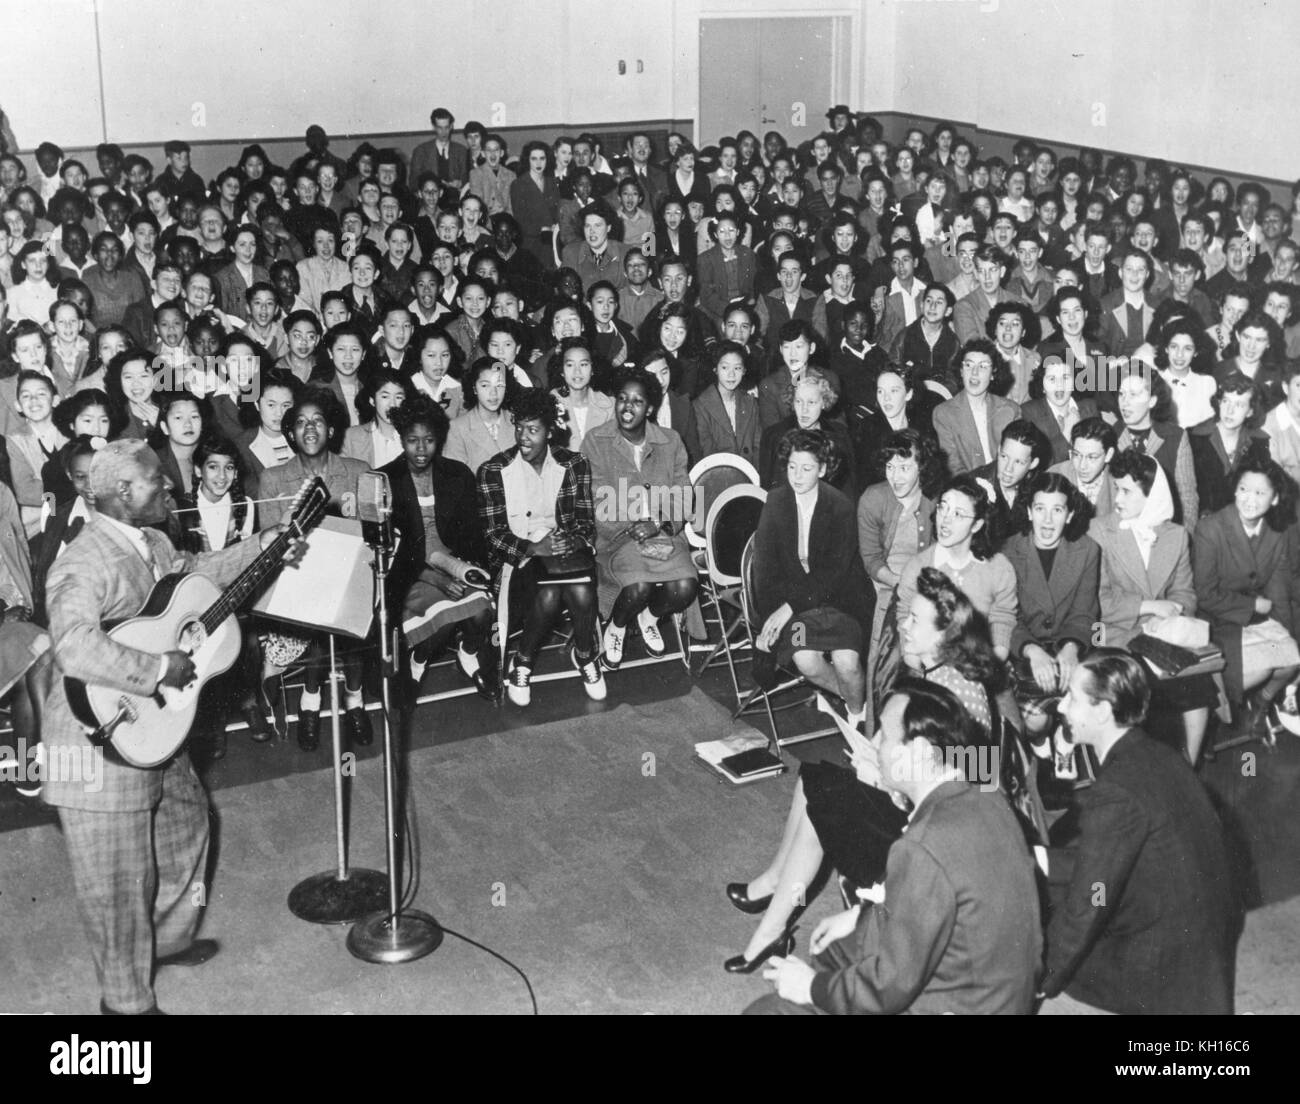 Huddie William Ledbetter (1888-1949), Folk und Blues Musiker, besser bekannt unter seinem Künstlernamen "leadbelly", führt vor einem Publikum von High School - alter Jugend, sich auf seine 12-saitige Gitarre, San Francisco, CA, 1949. Stockfoto